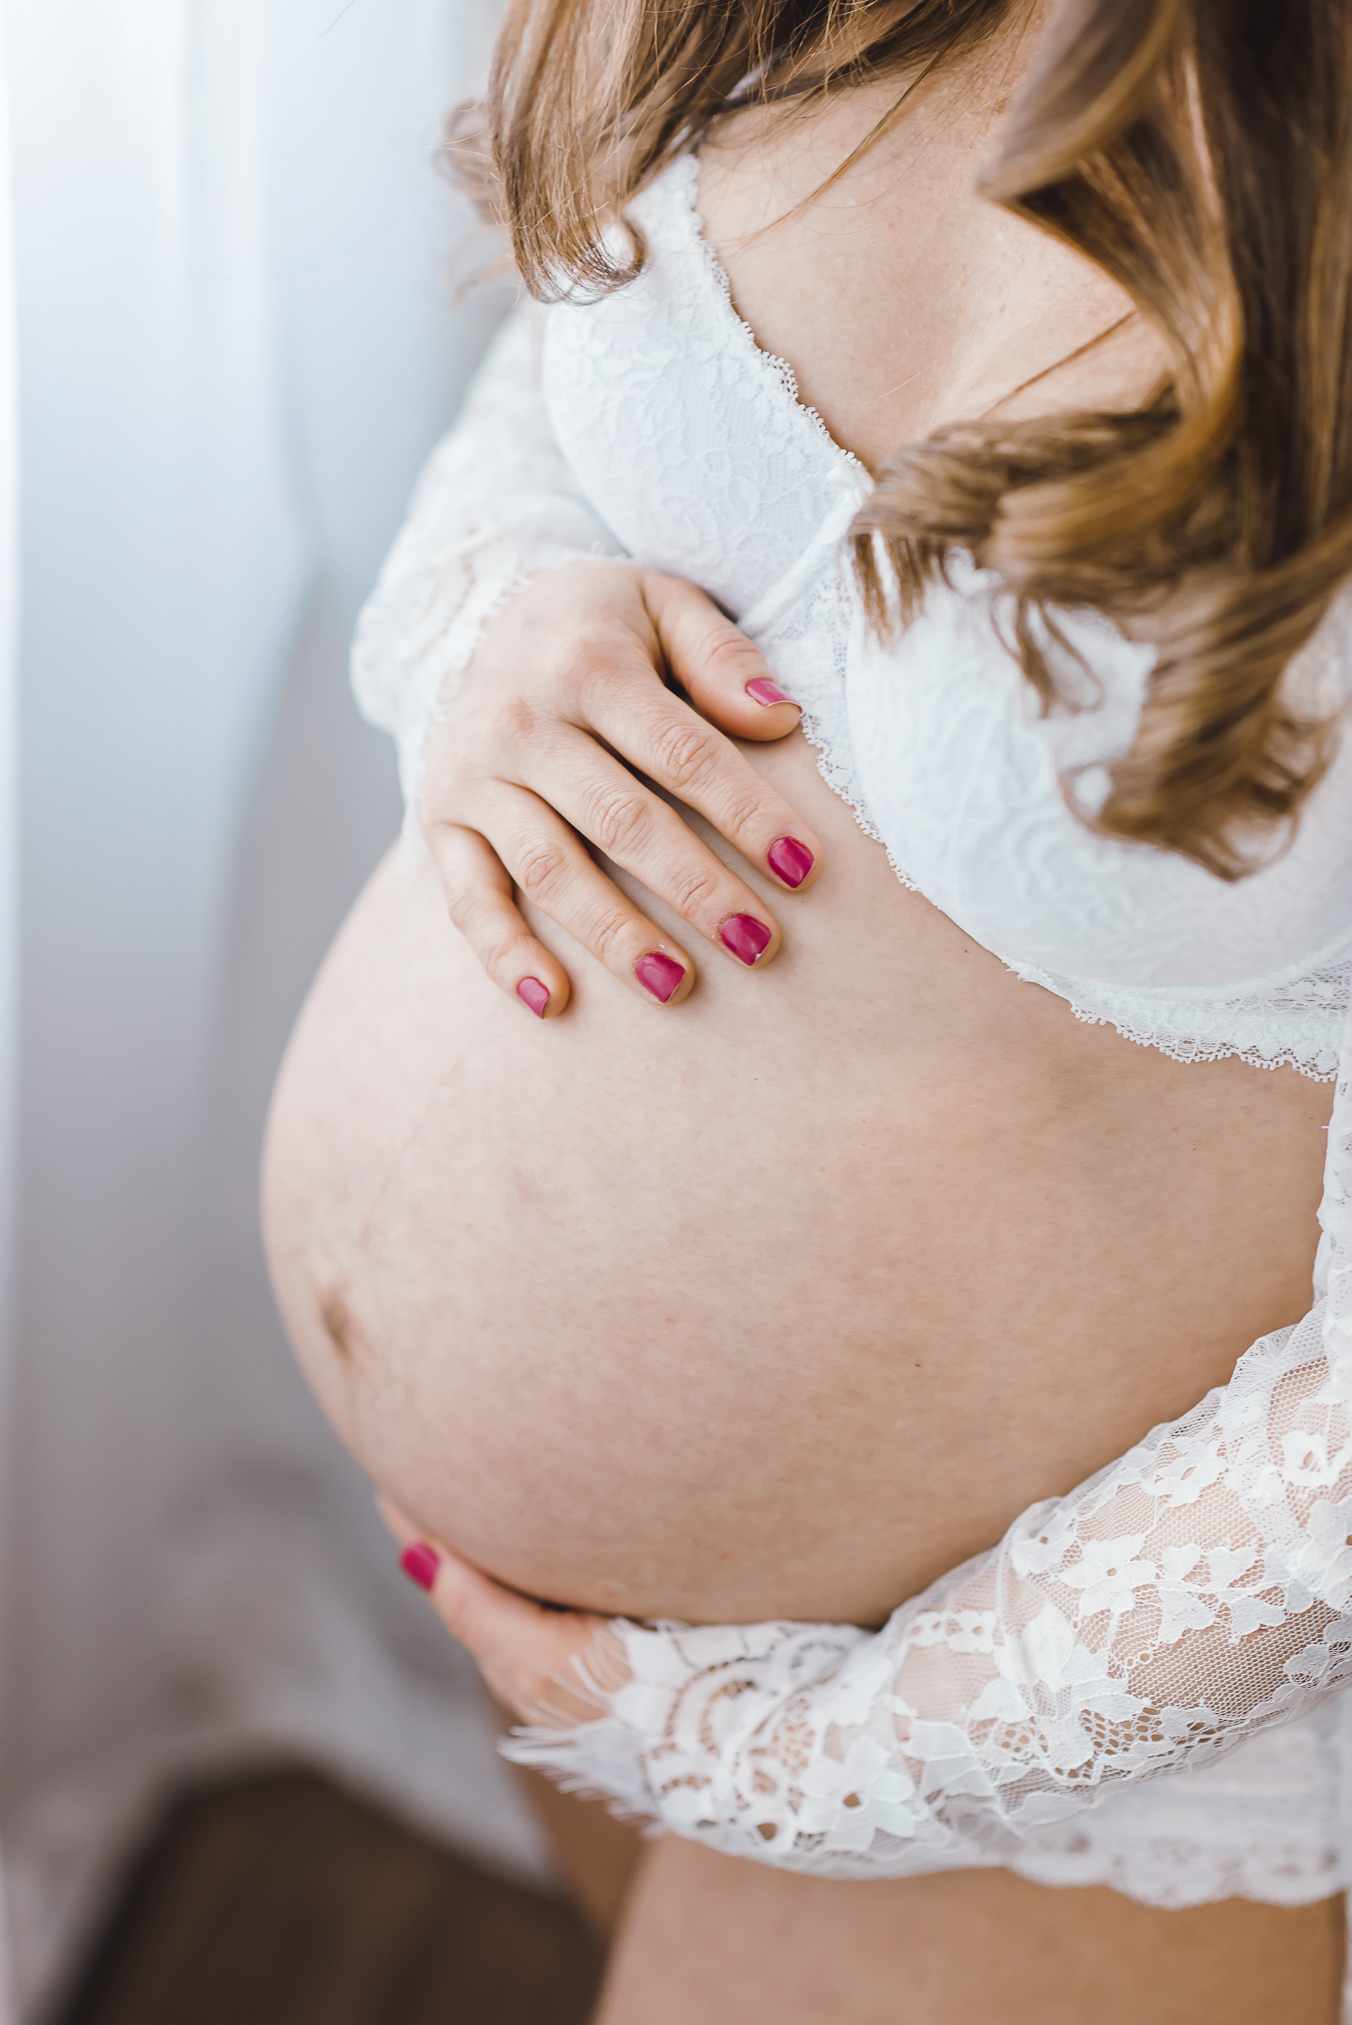 Schwangerschaft Fotoshooting in Freiburg, Close-up der Hände auf dem Babybauch